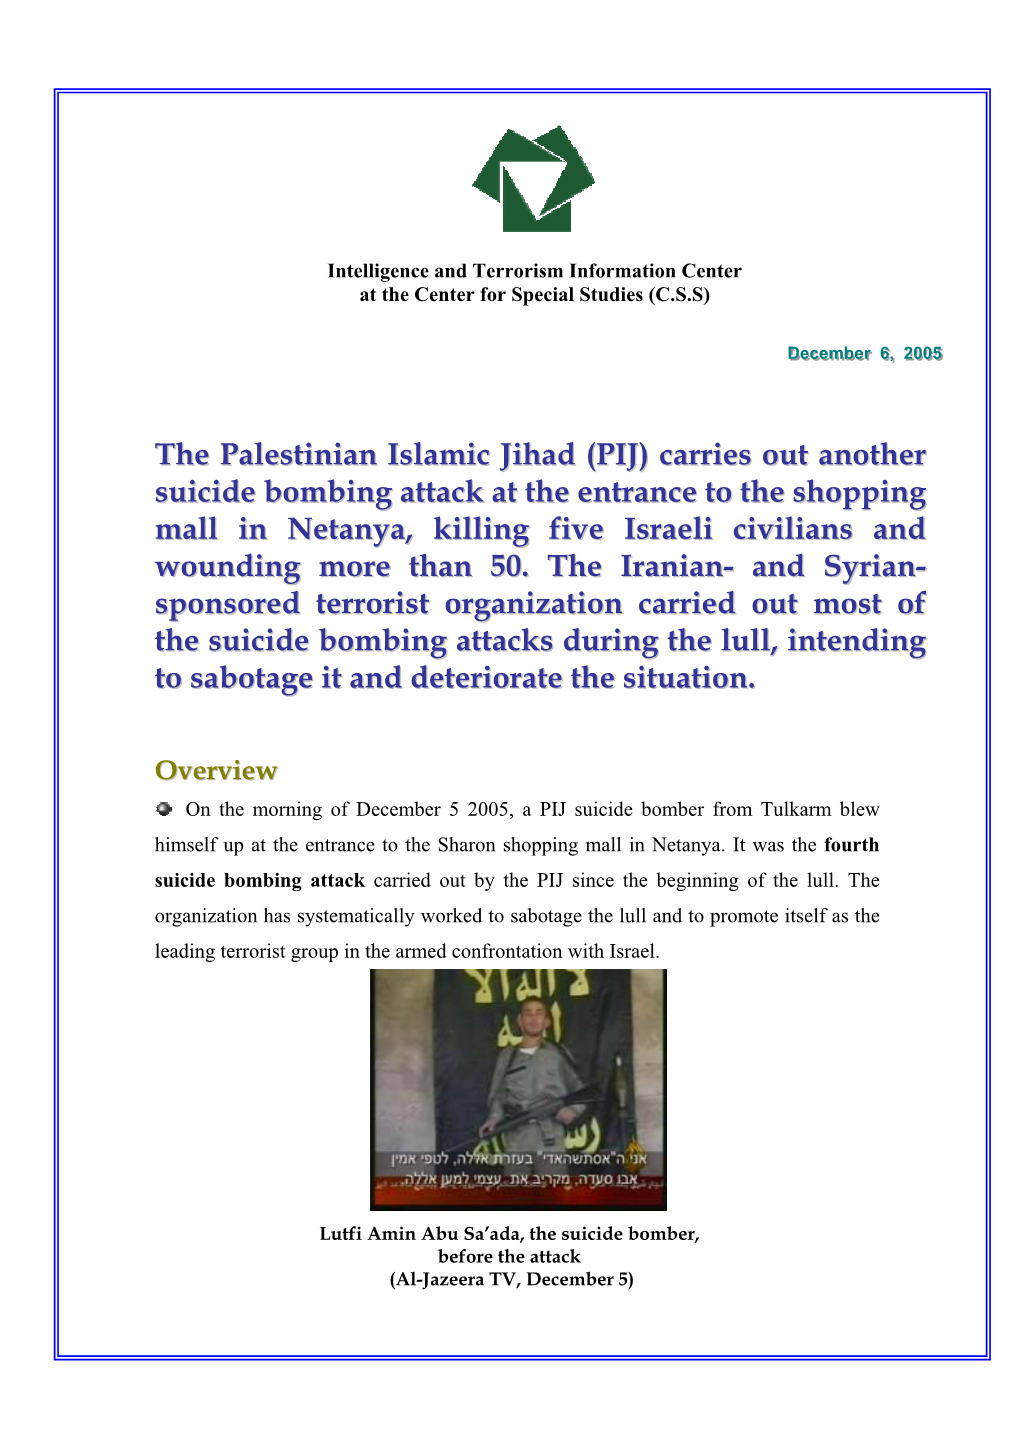 The Palestinian Islamic Jihad